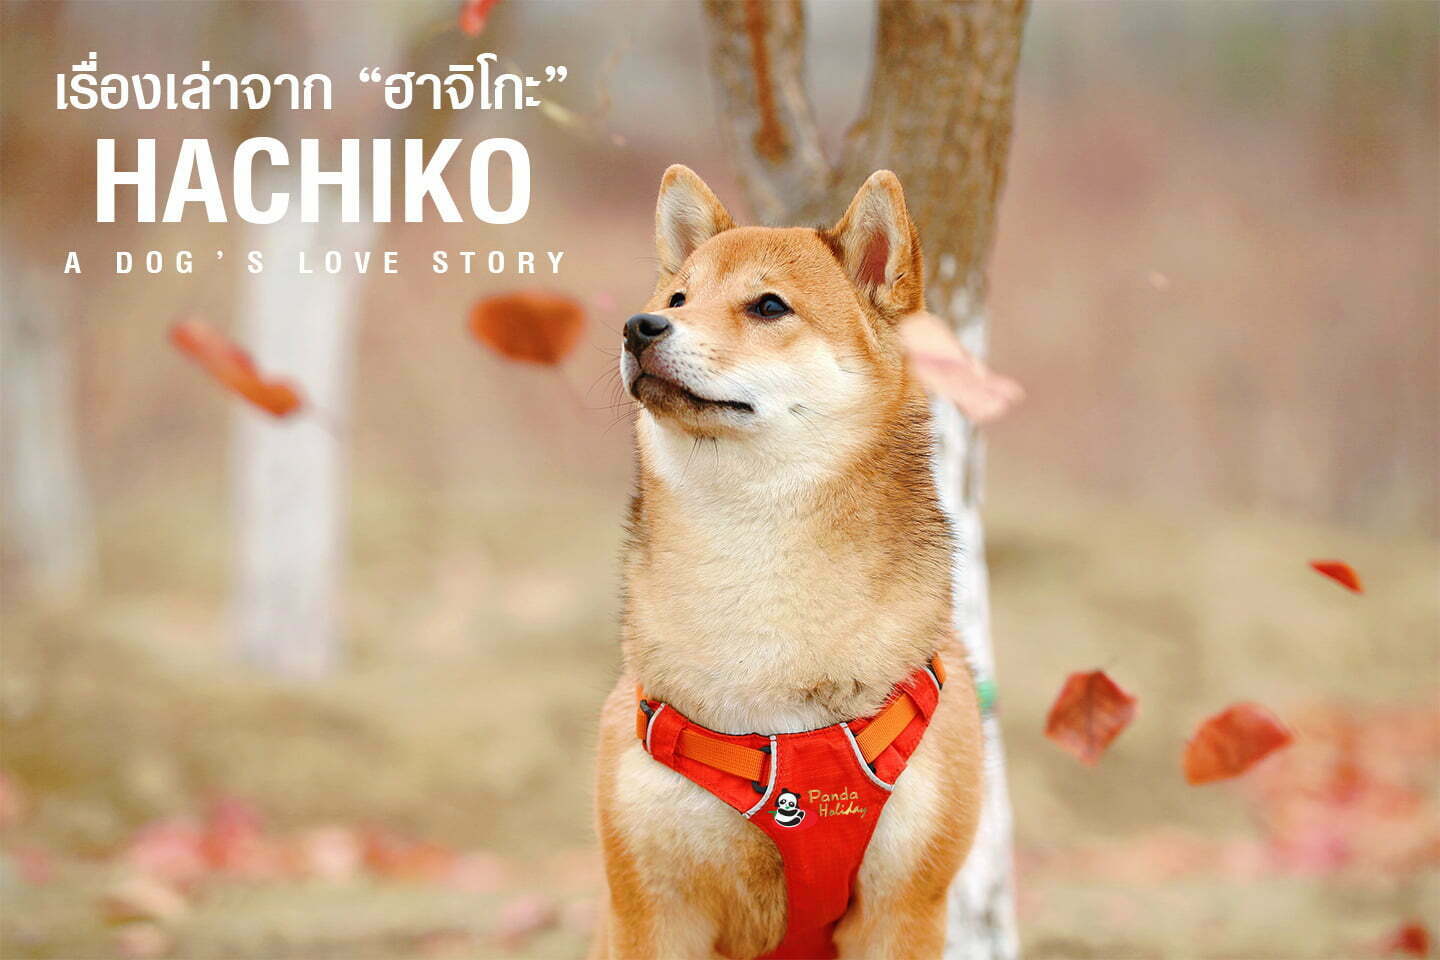 เรื่องเล่าจากฮาชิโกะ “สุนัขยอดกตัญญู ฮะชิโกะ”